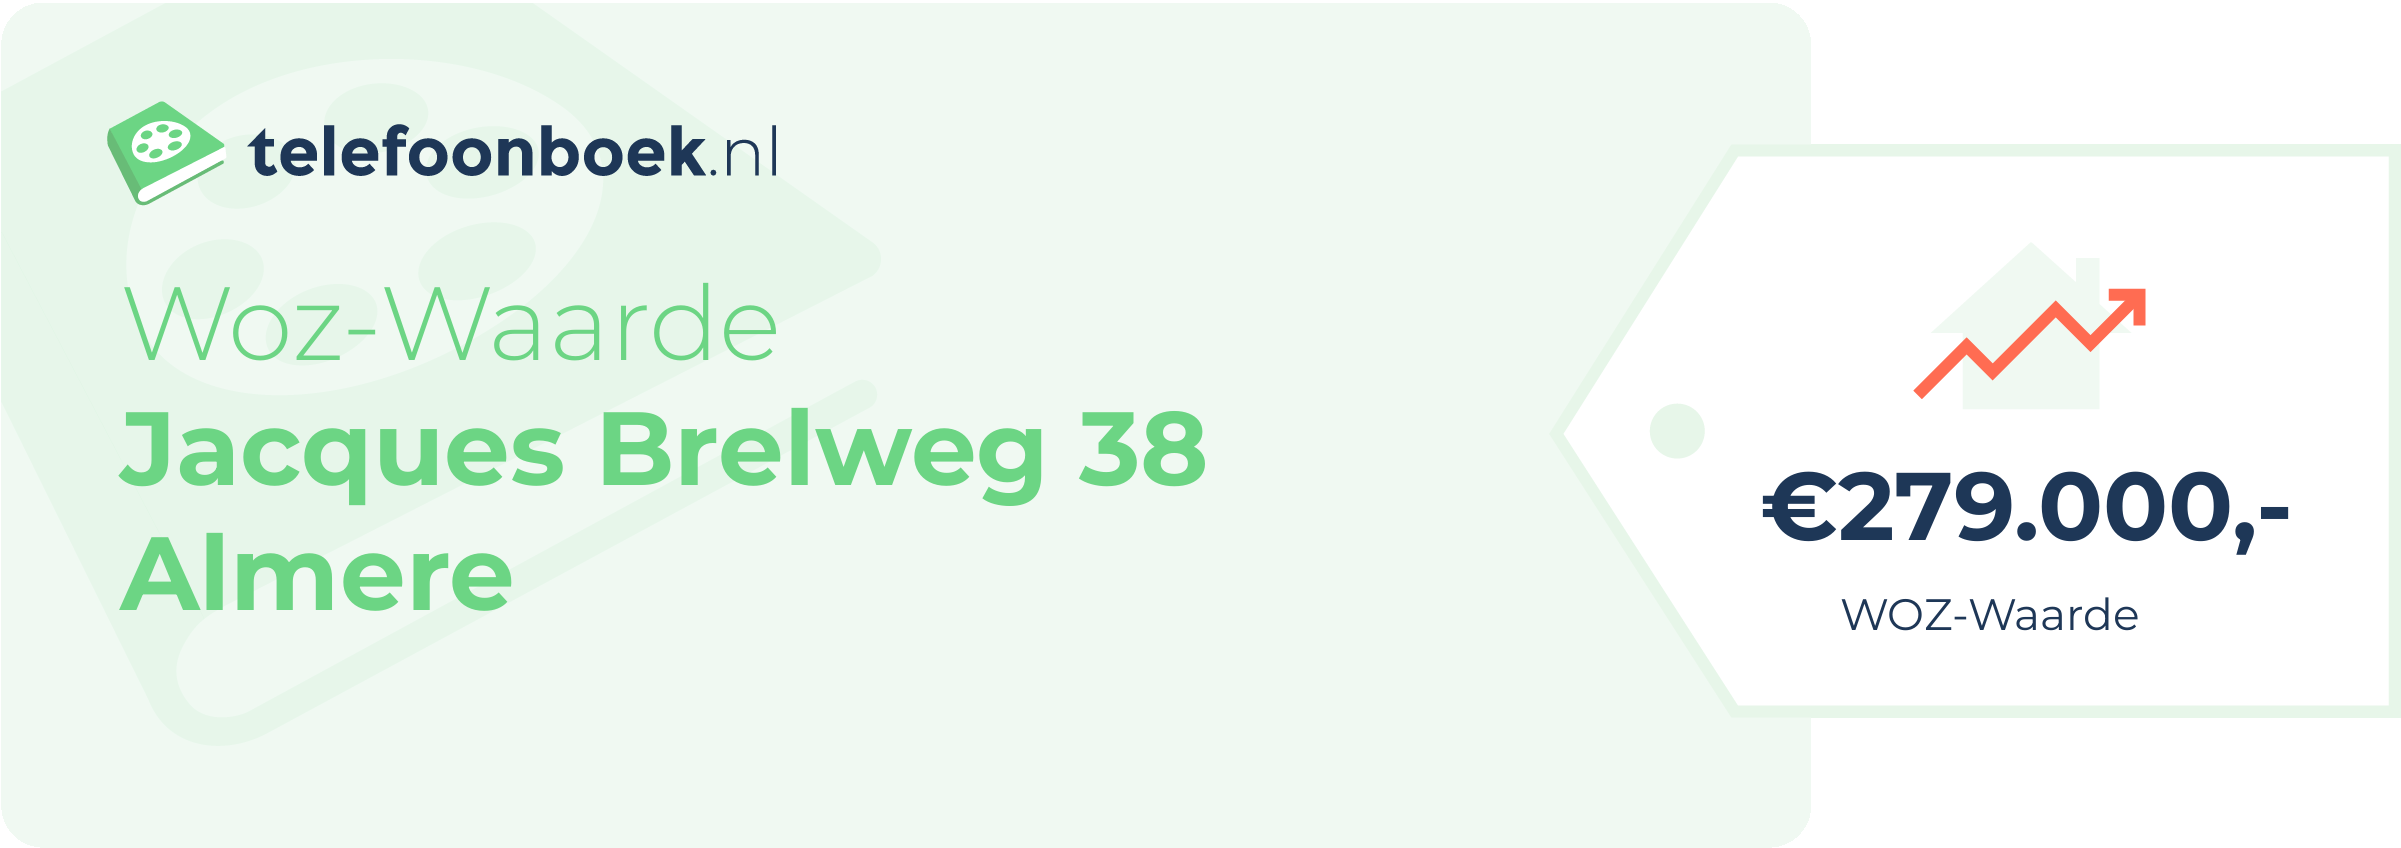 WOZ-waarde Jacques Brelweg 38 Almere